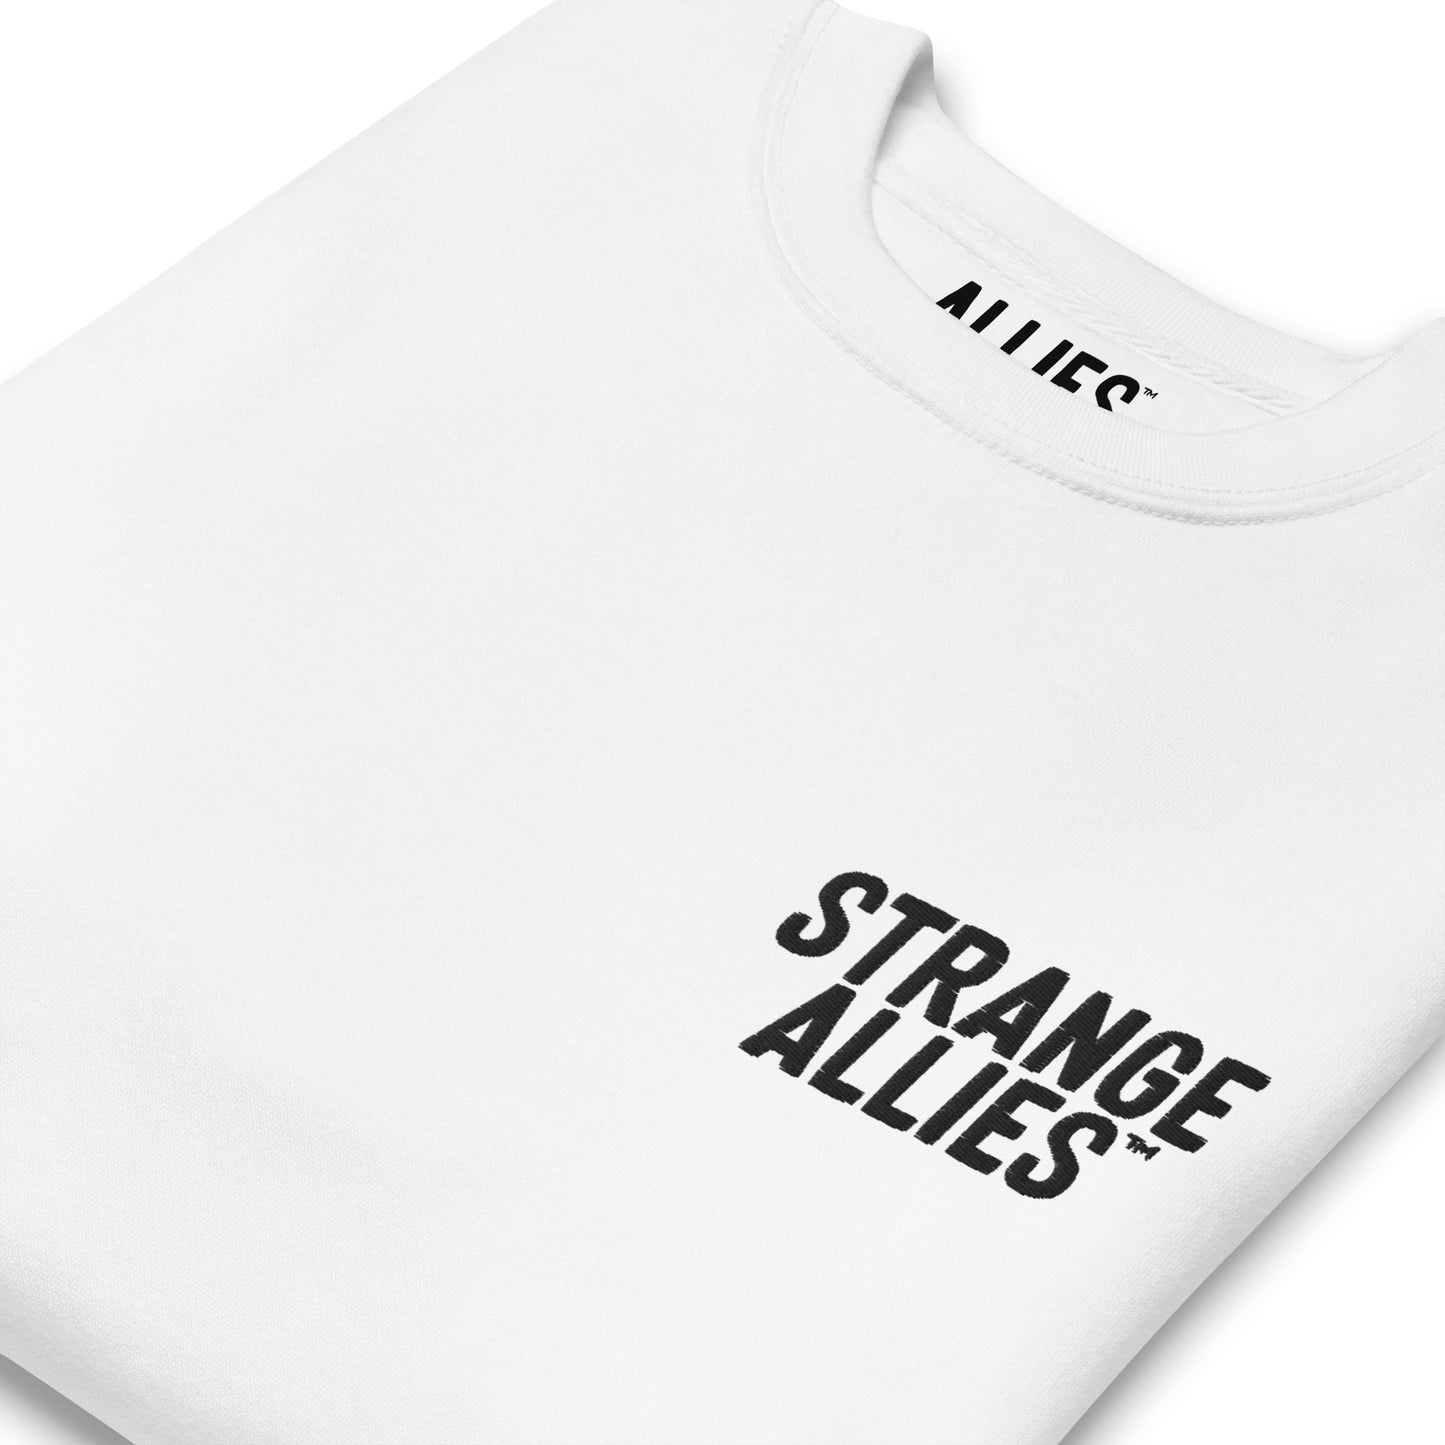 Strange Allies Embroidered Sweatshirt